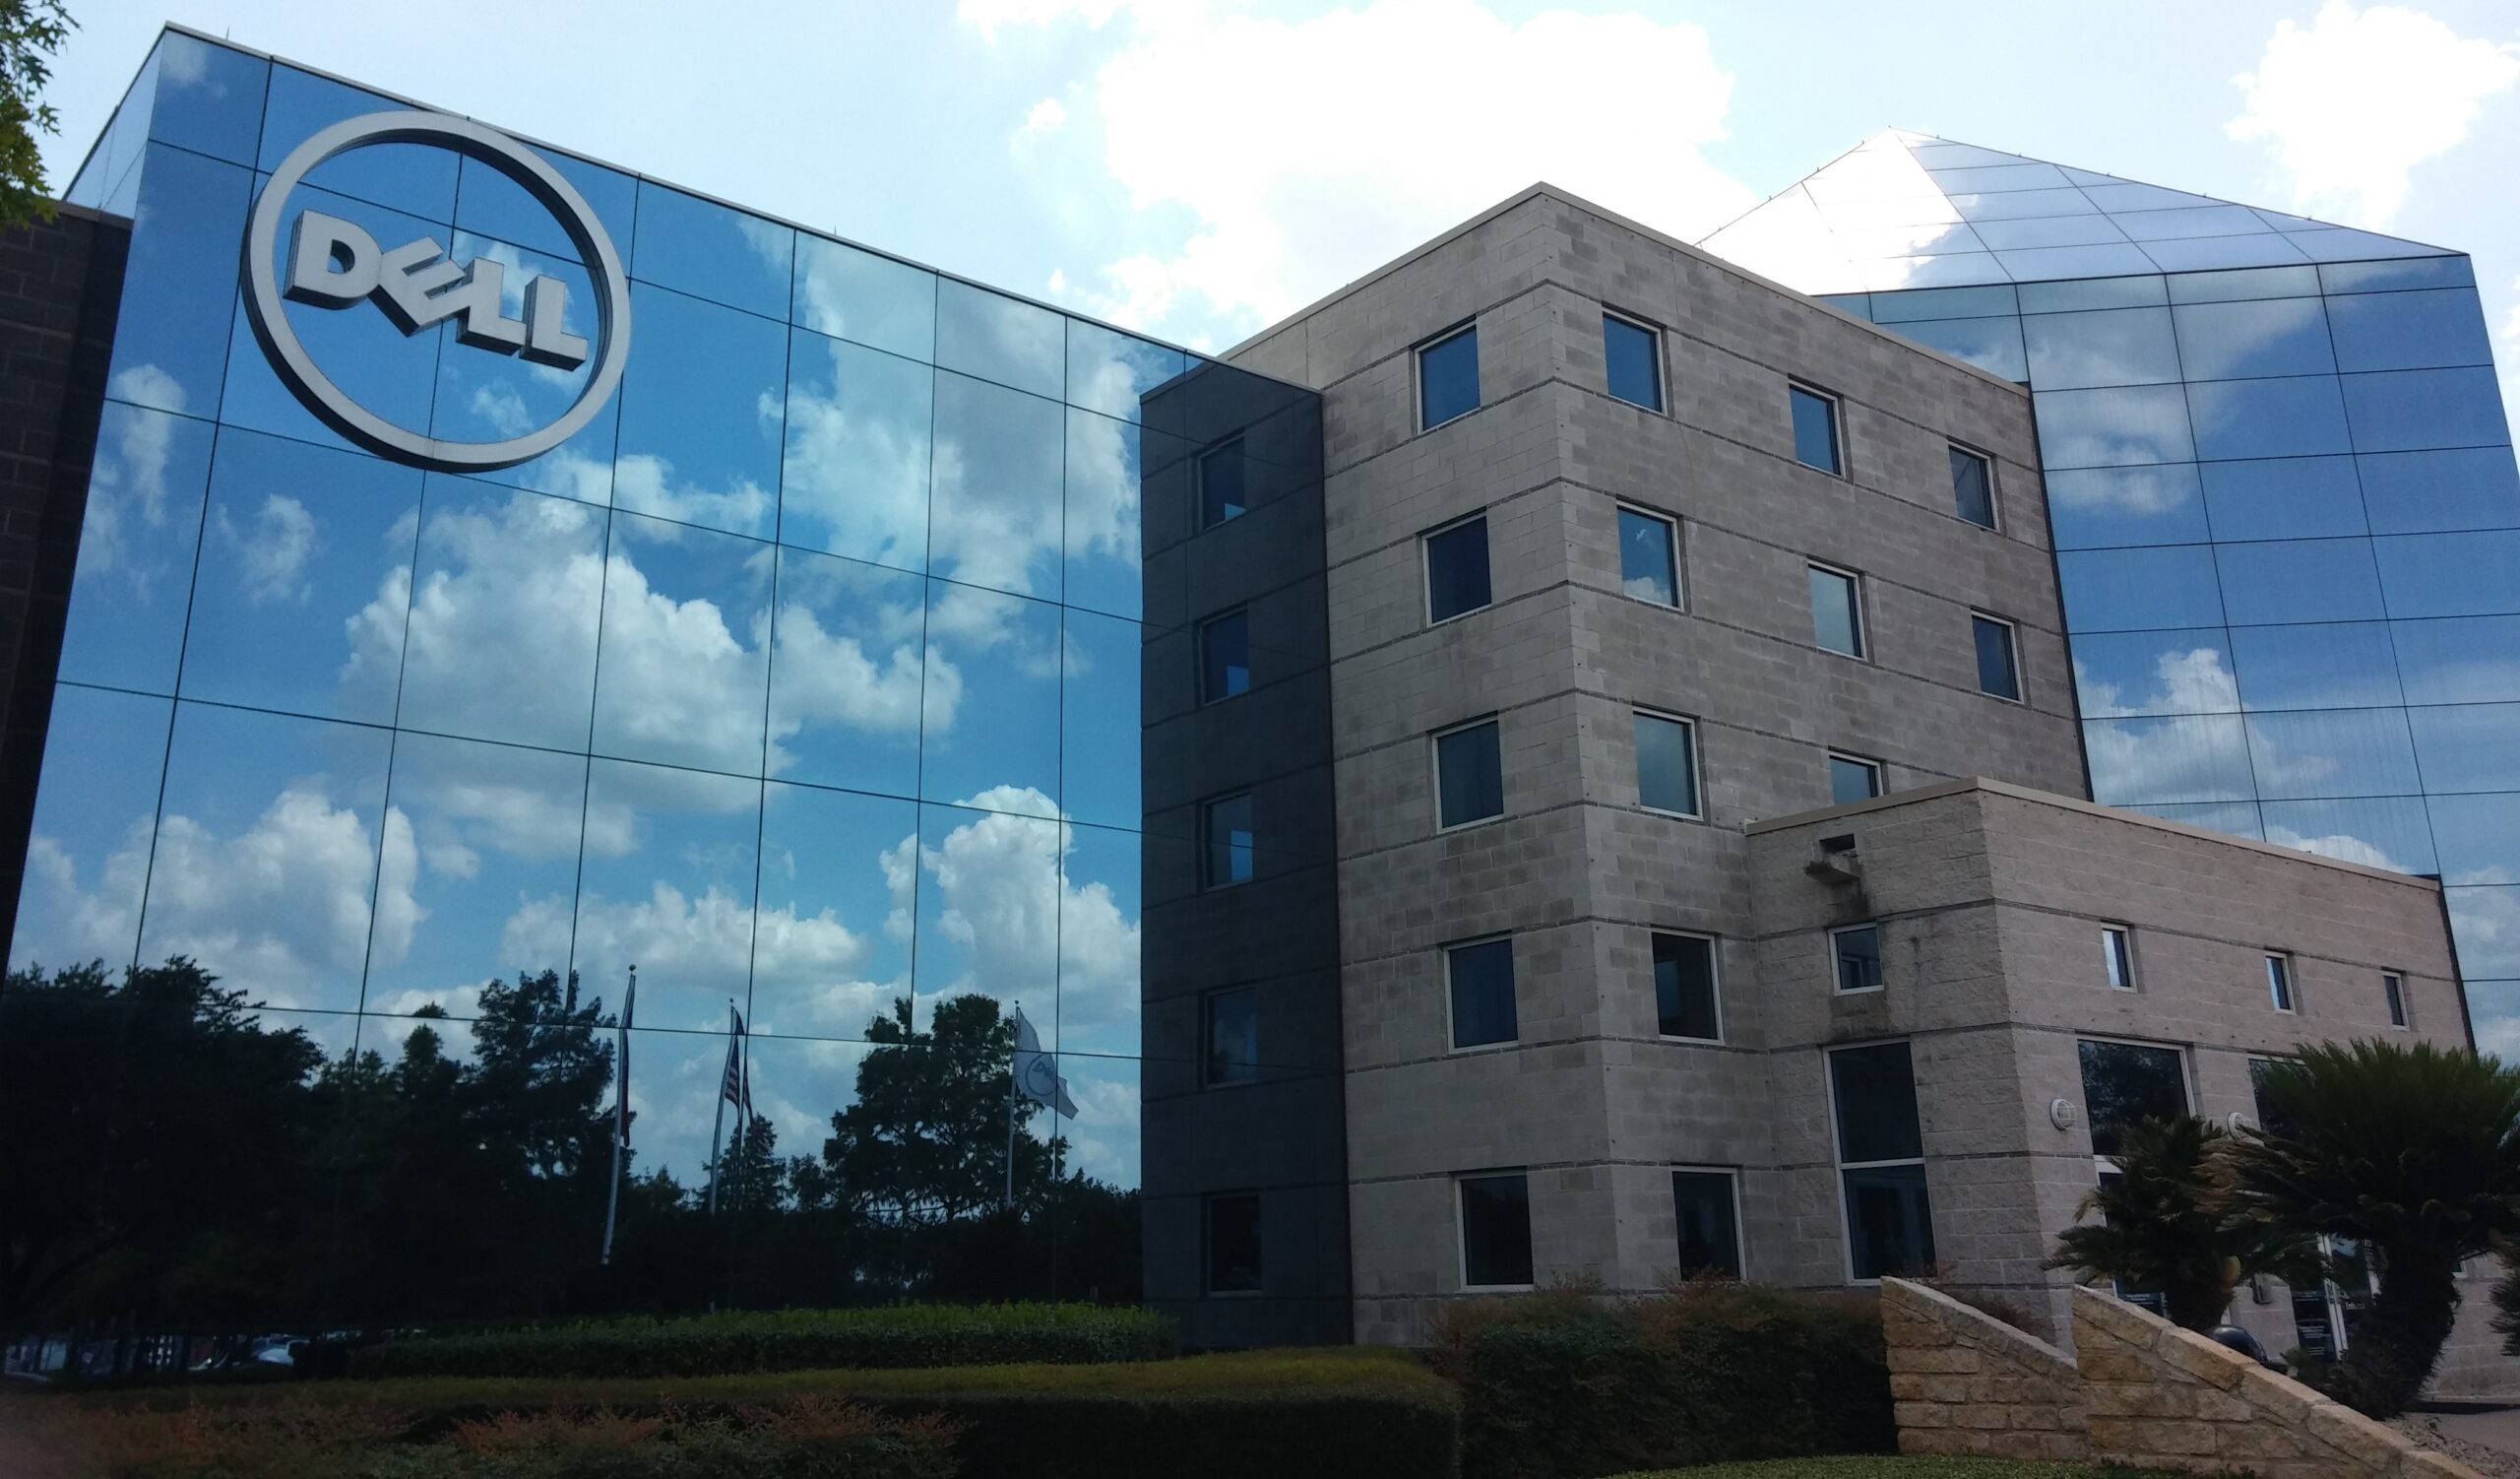 Zdjęcie nowoczesnego biurowca z dużym logo firmy Dell na szklanej fasadzie, odbijającym błękitne niebo i chmury. Ultimatum DELL dla pracowników jest jasne